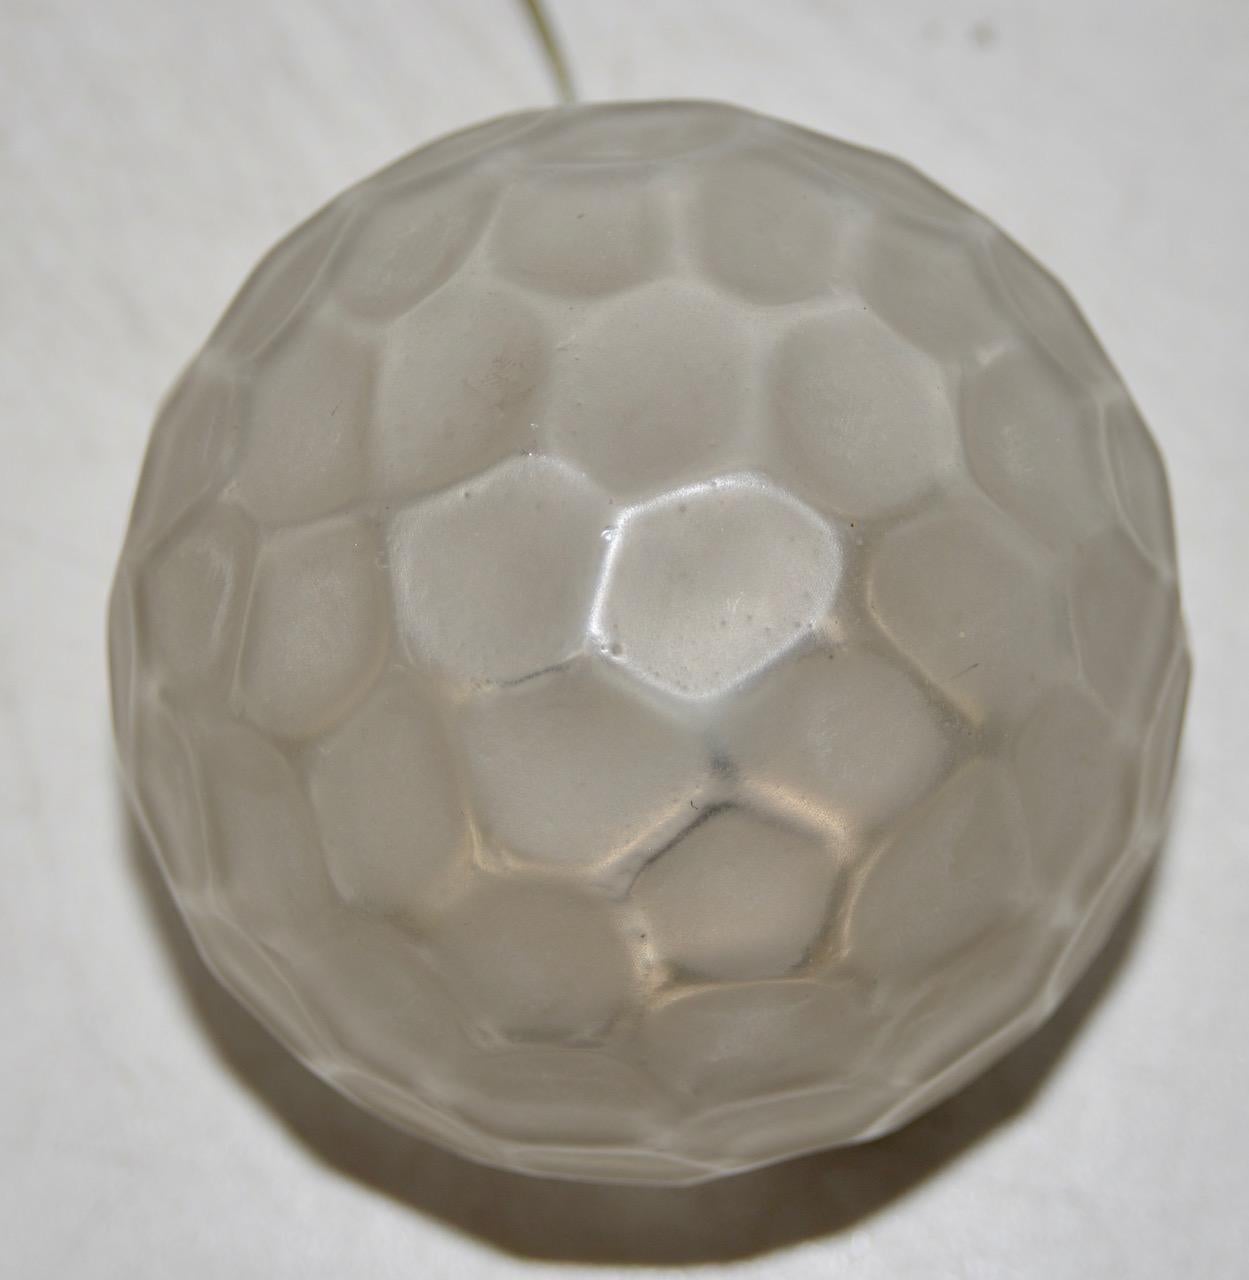 Lampe de table à globe en verre Art déco Genet & Michon (France), vers 1920

Globe en verre pressé sur une base en métal. La base mesure 4